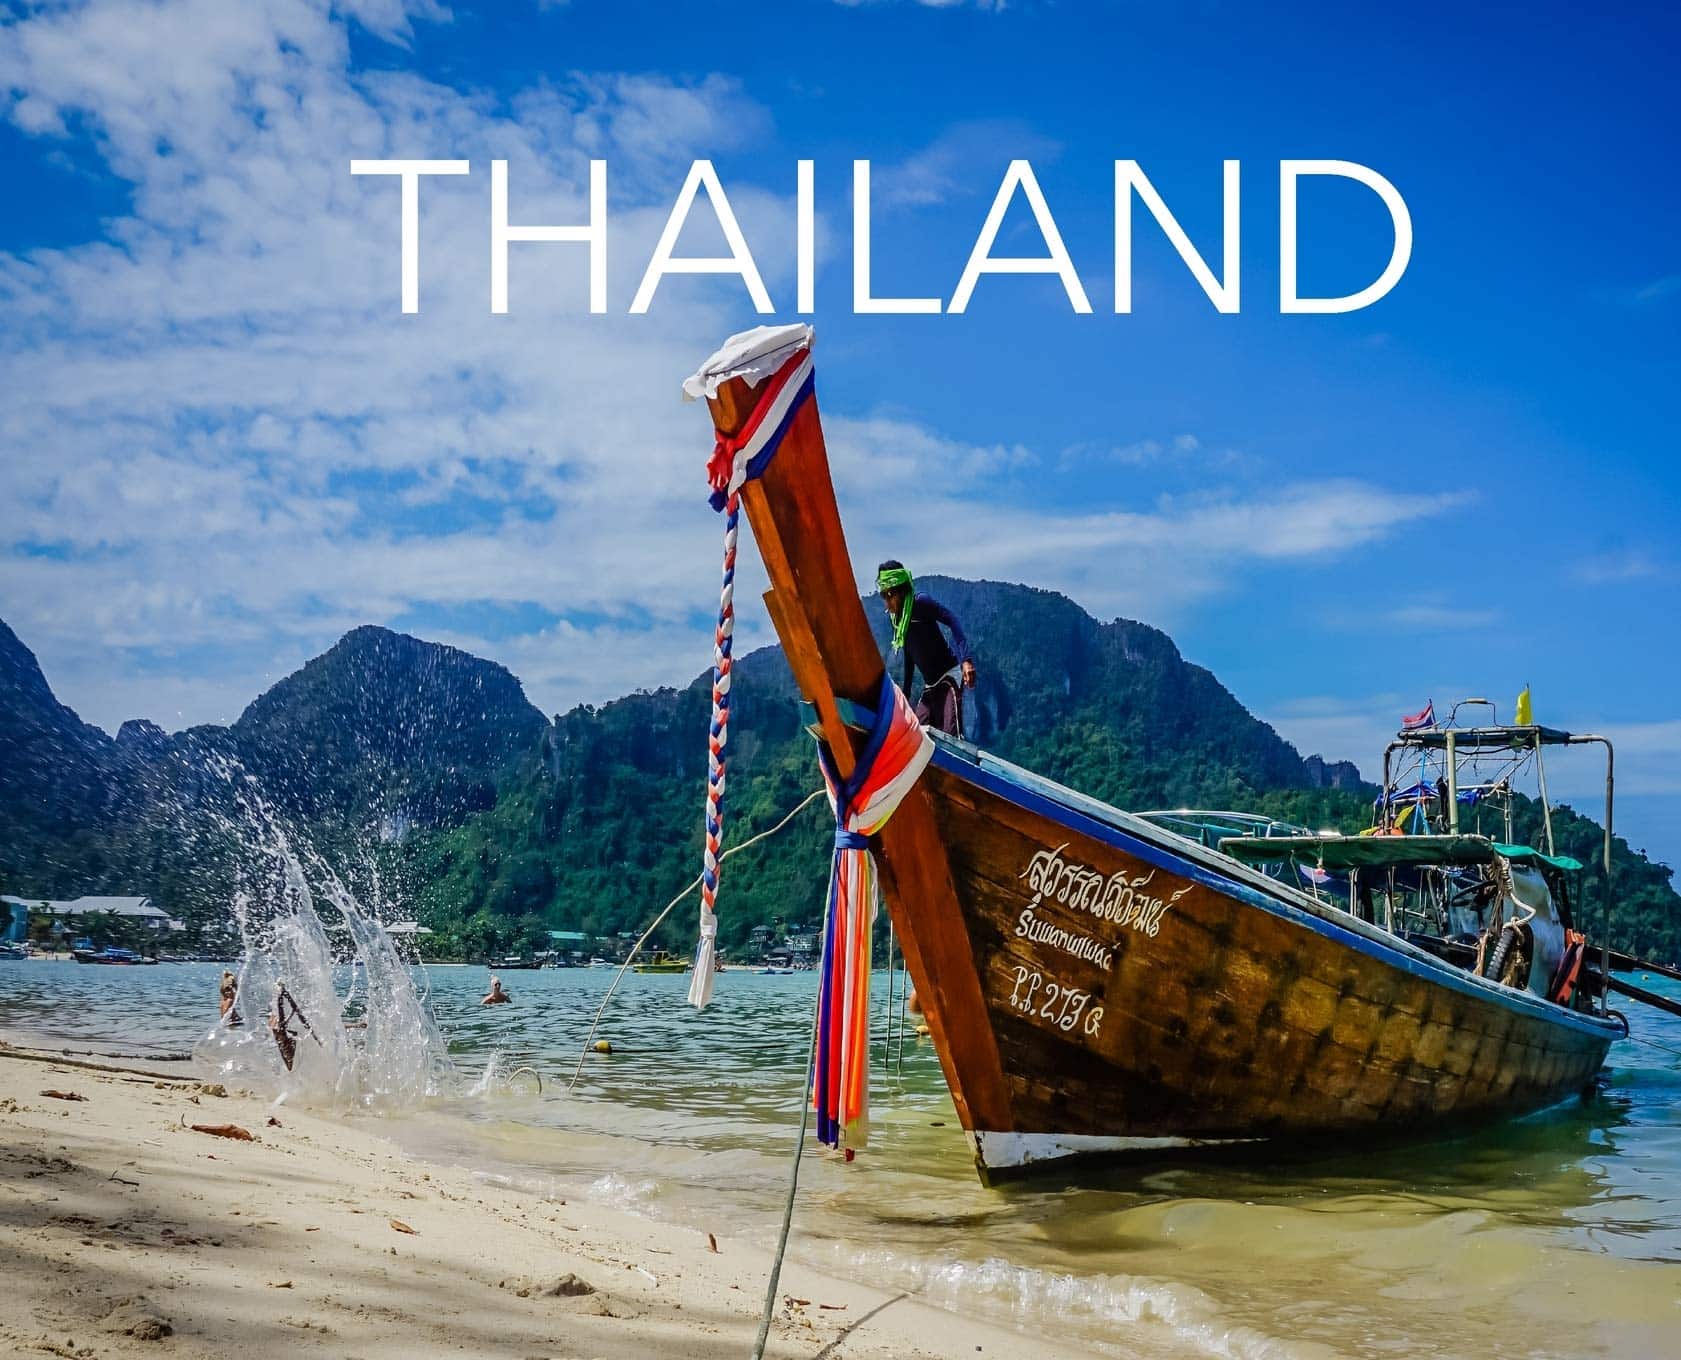 Tour du lichj free & easy Thasi Lan là hình thức du lịch mới rất được ưa chuộng